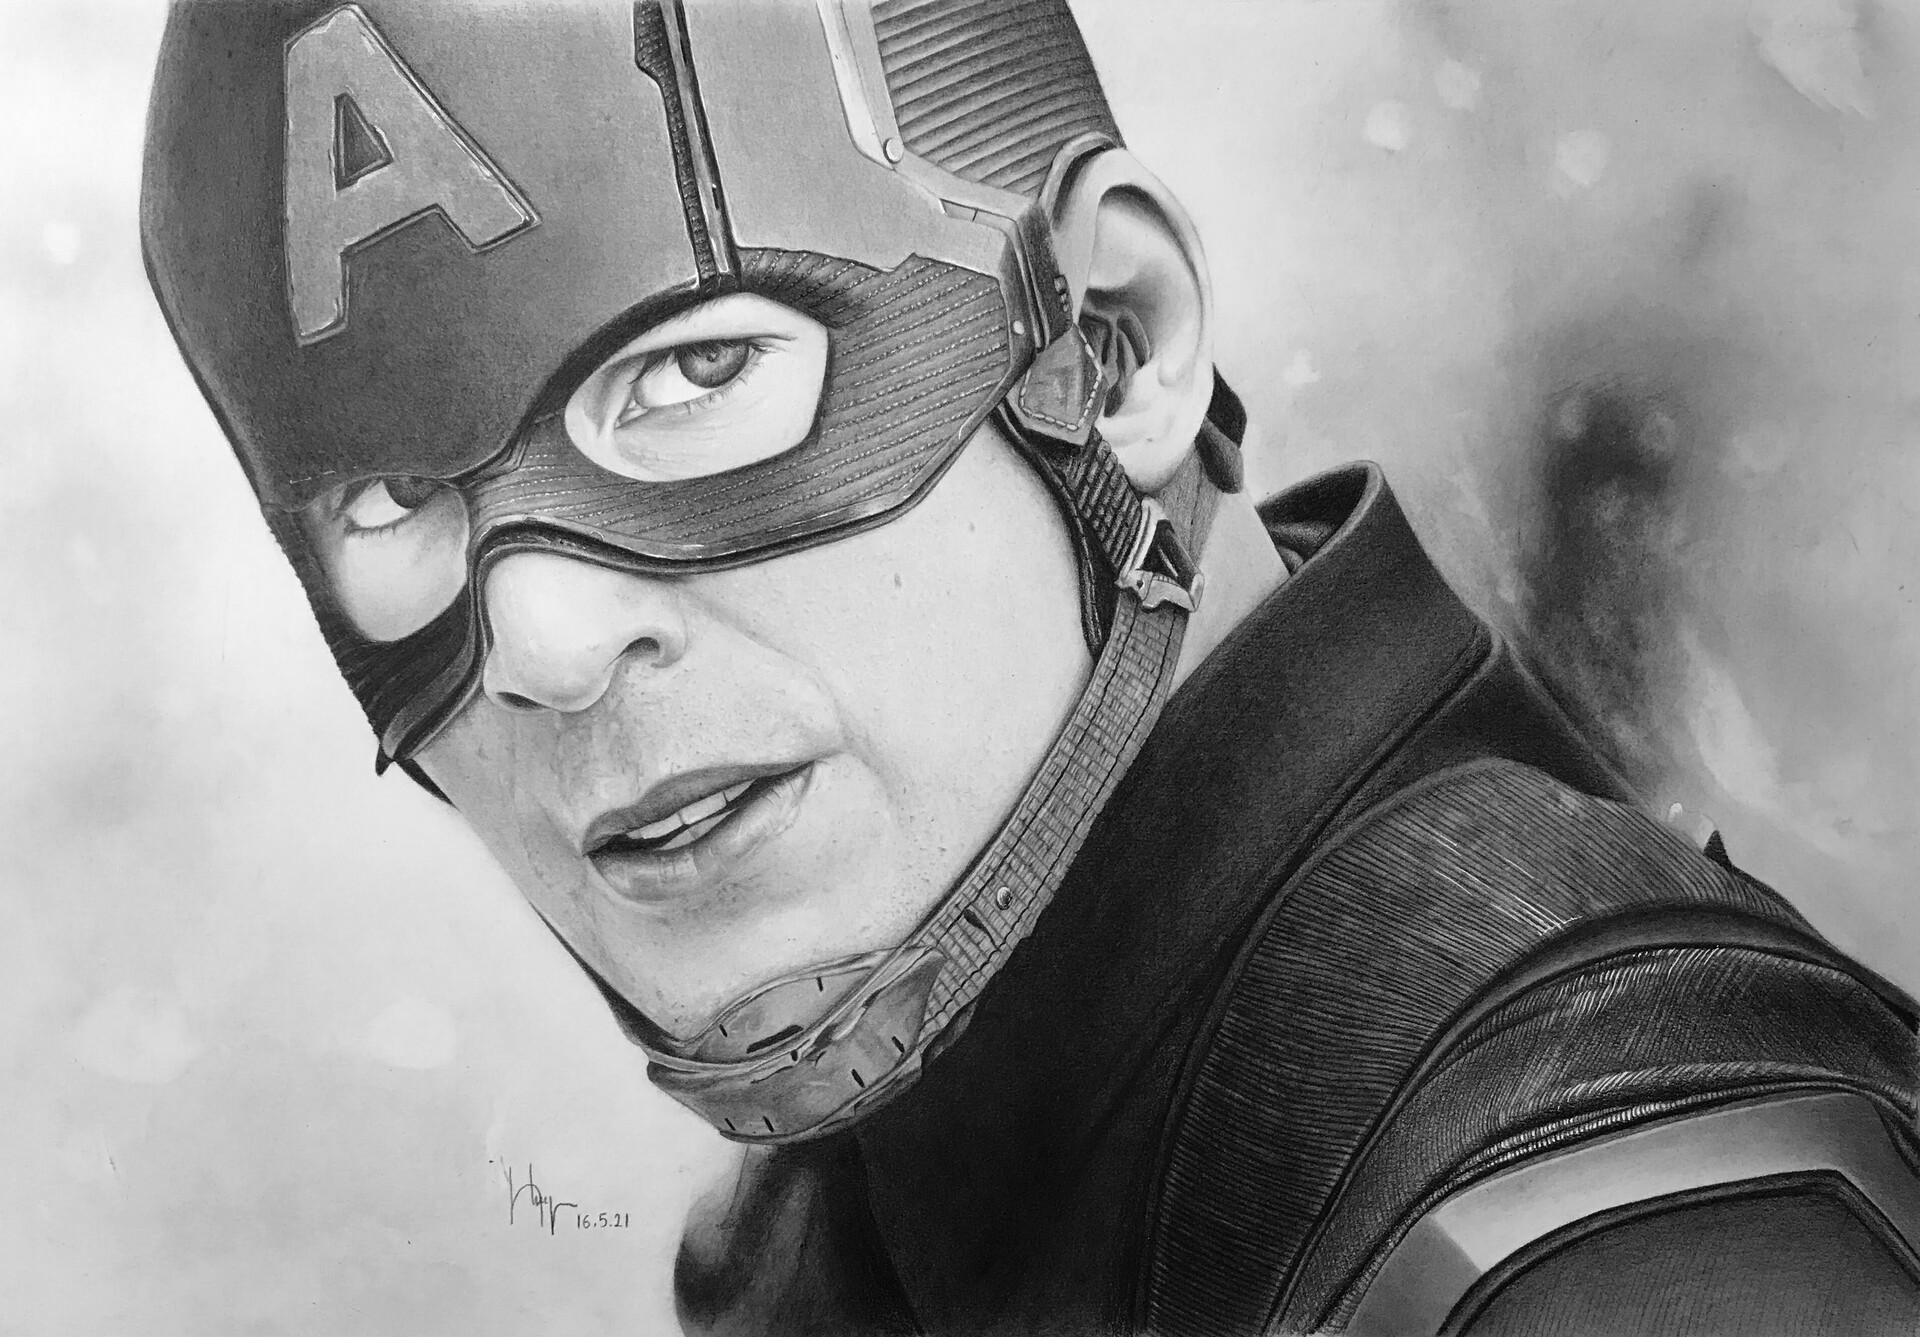 Nếu bạn là một fan của Captain America và muốn tạo ra một tác phẩm nghệ thuật độc đáo, hãy xem các bức tranh trên ArtStation. Các họa sĩ đã vẽ các tác phẩm này với bút chì, tạo ra một cái nhìn chân thực và hoàn hảo.